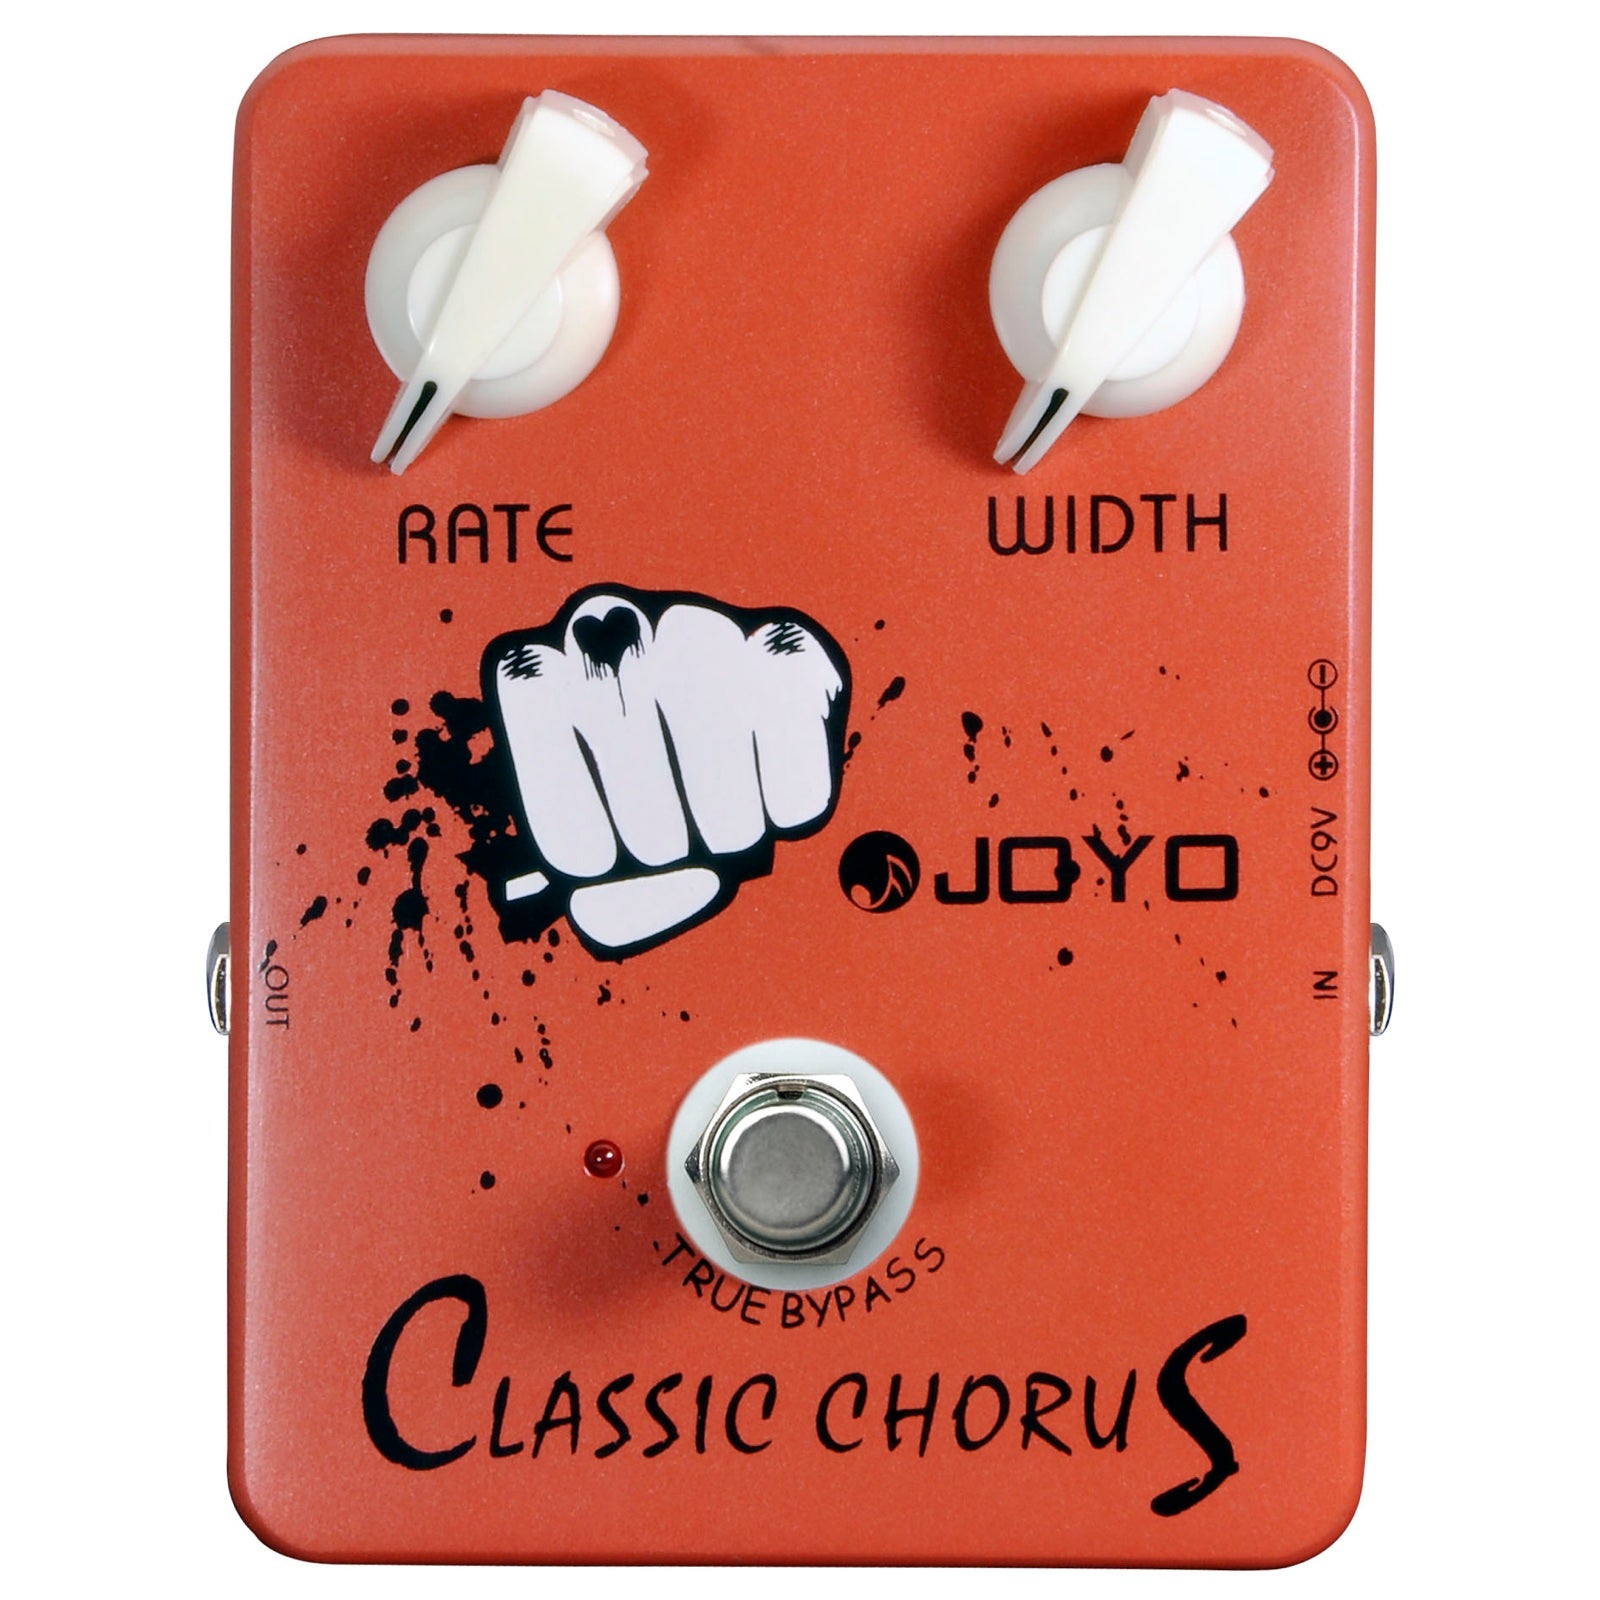 JOYO JF-05 CLASSIC CHORUS, JOYO, EFFECTS, joyo-classic-chorus-effect-pedal, ZOSO MUSIC SDN BHD